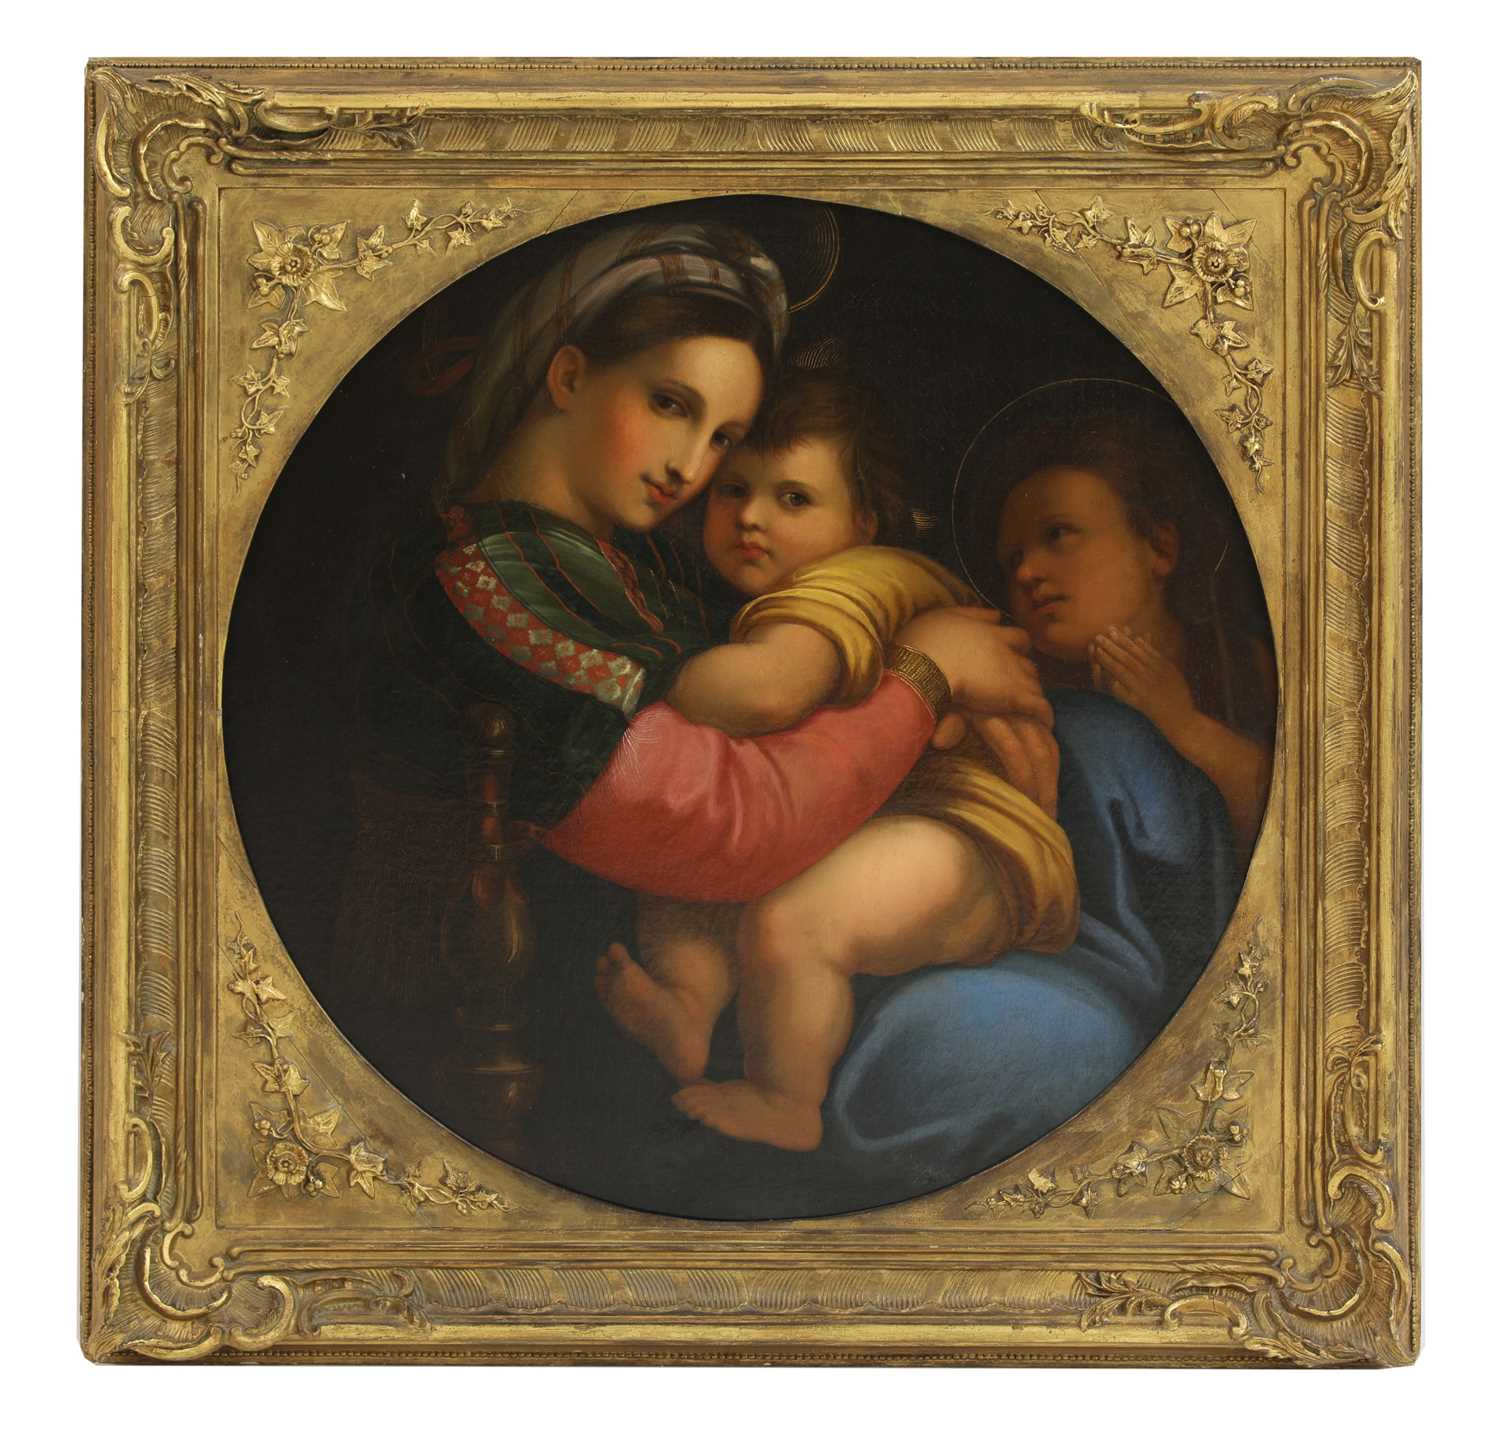 Lot 591 - After Raffaello Sanzio da Urbino, known as Raphael (Italian, 1483-1520)